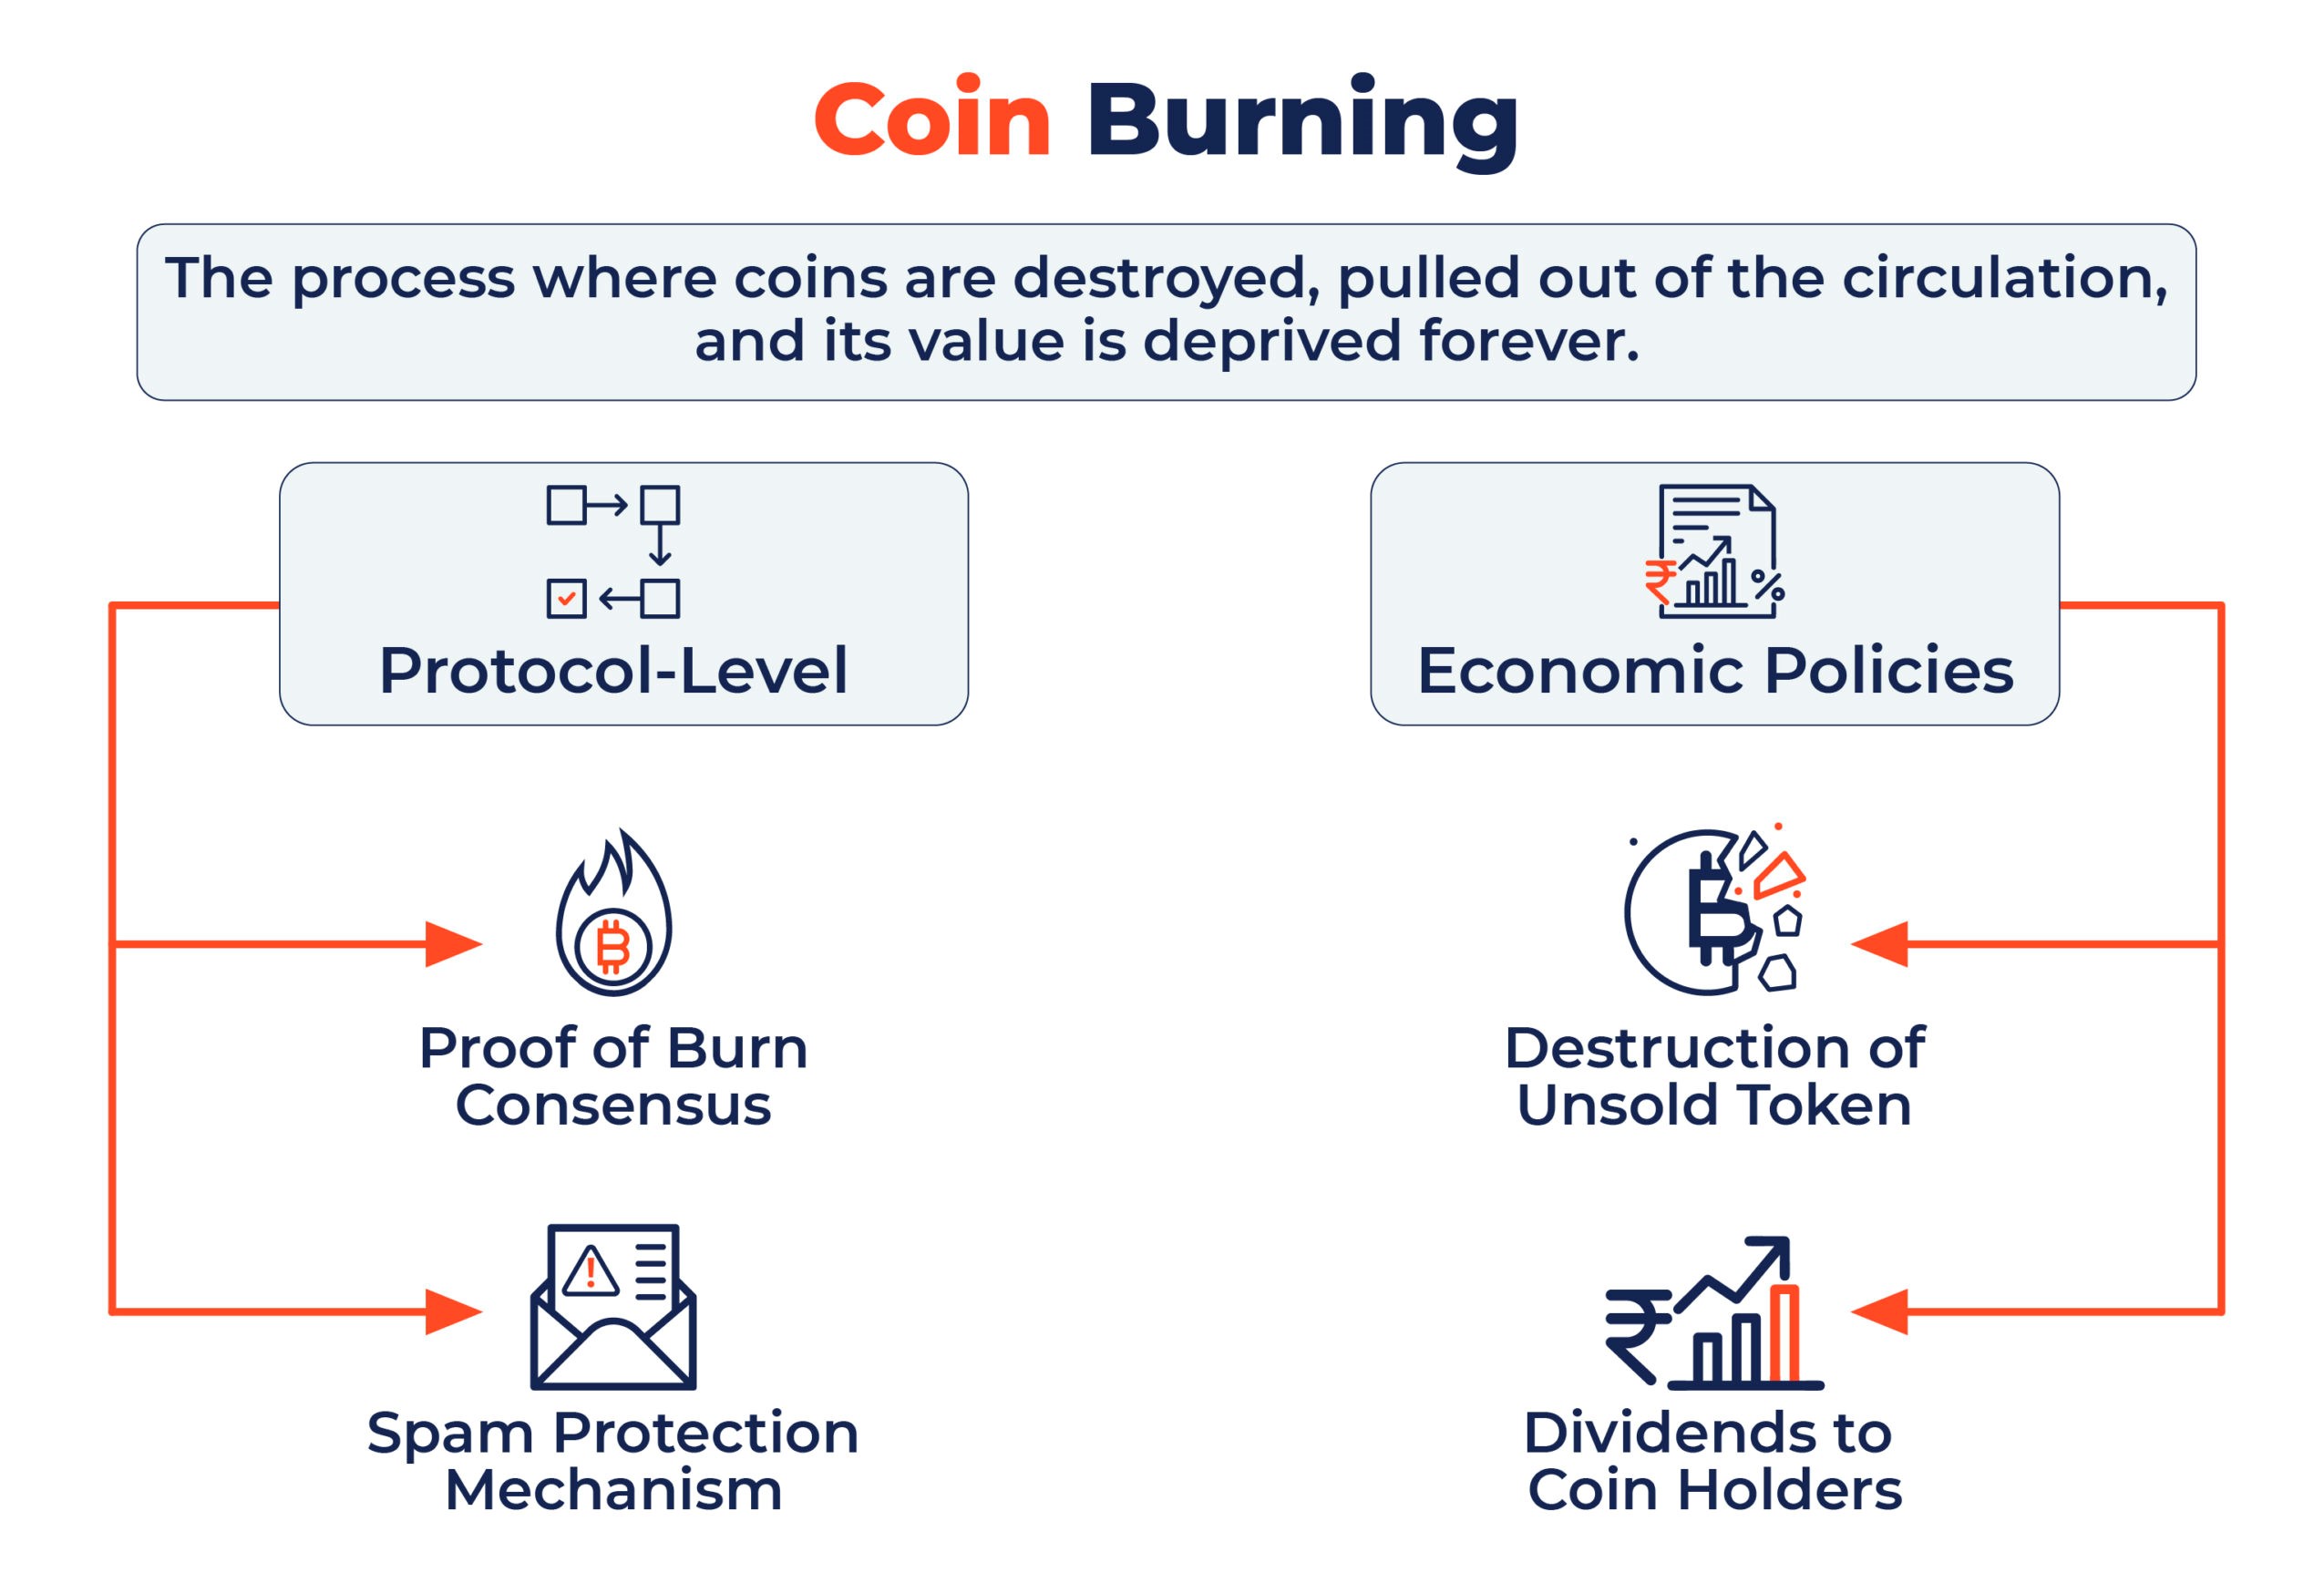 Burn coin